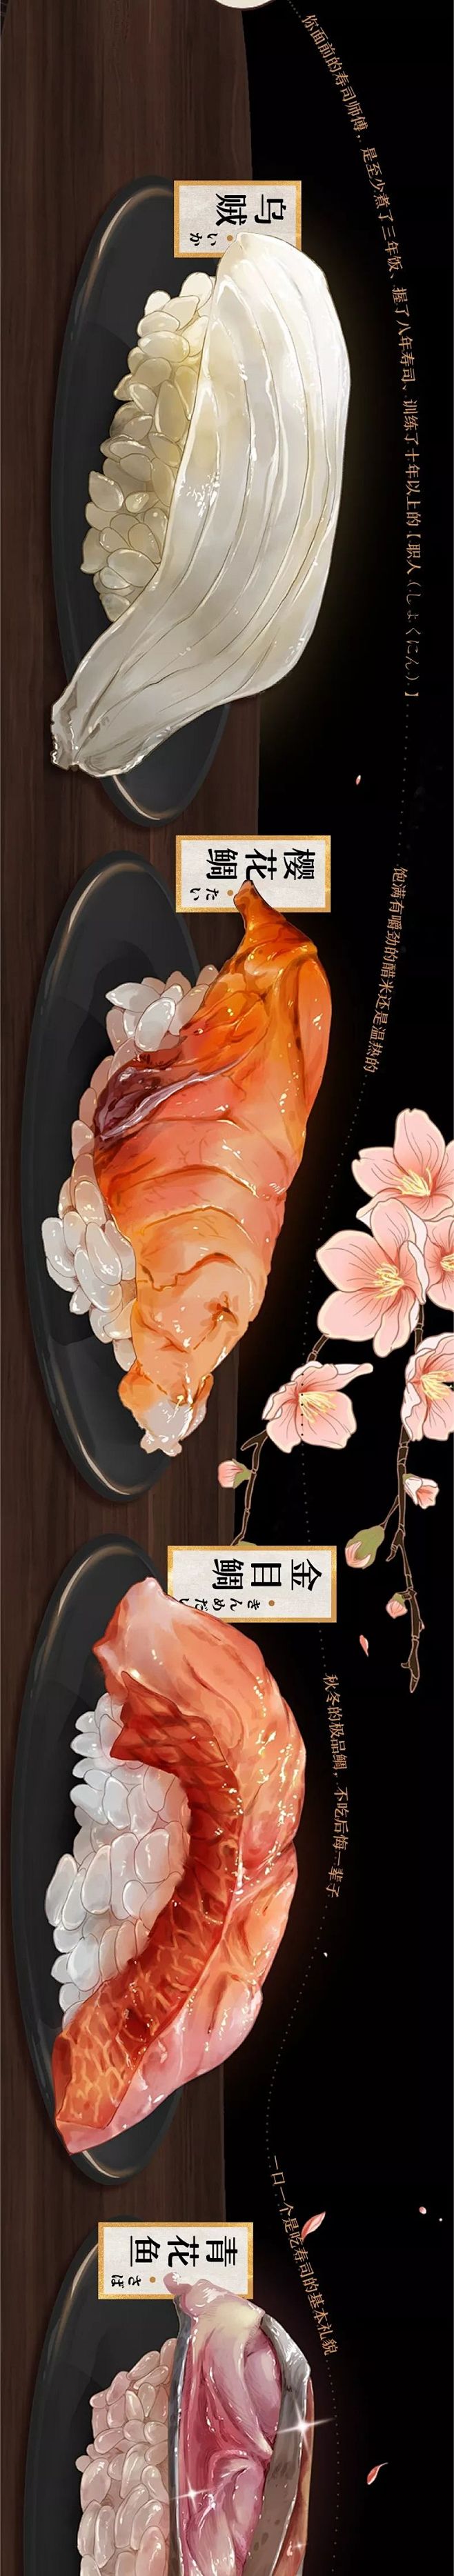 深夜食堂之寿司图鉴，这画得太诱人了！